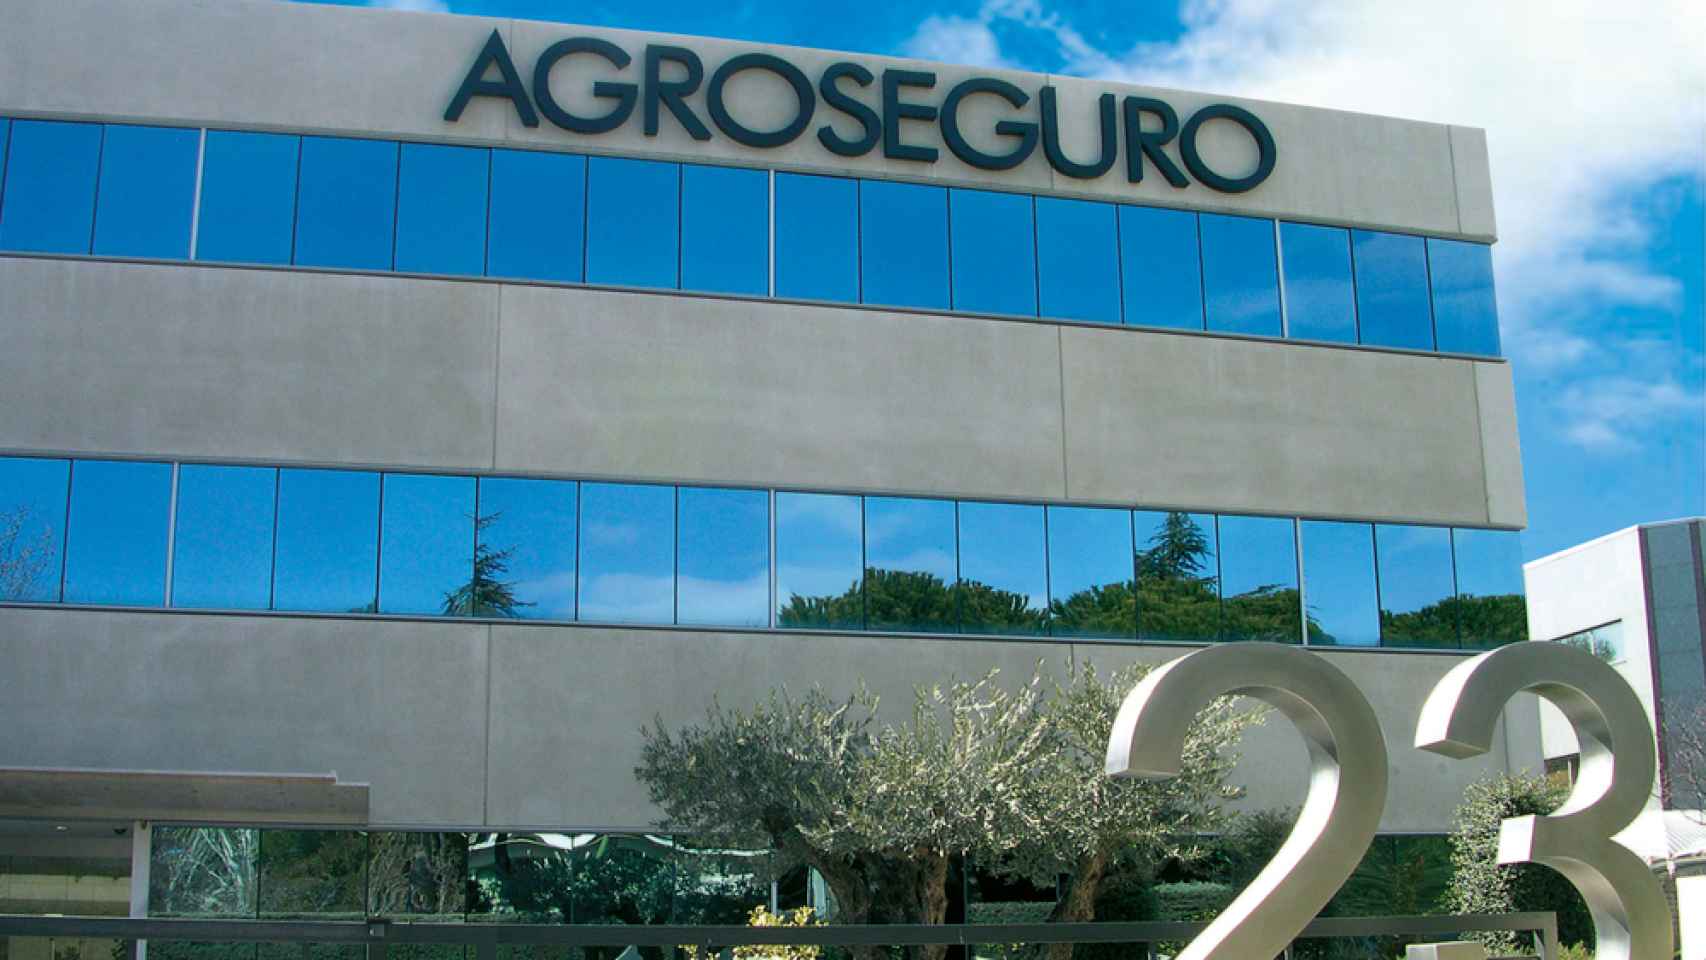 Edificio de Agroseguro. Foto: agroseguro.es.